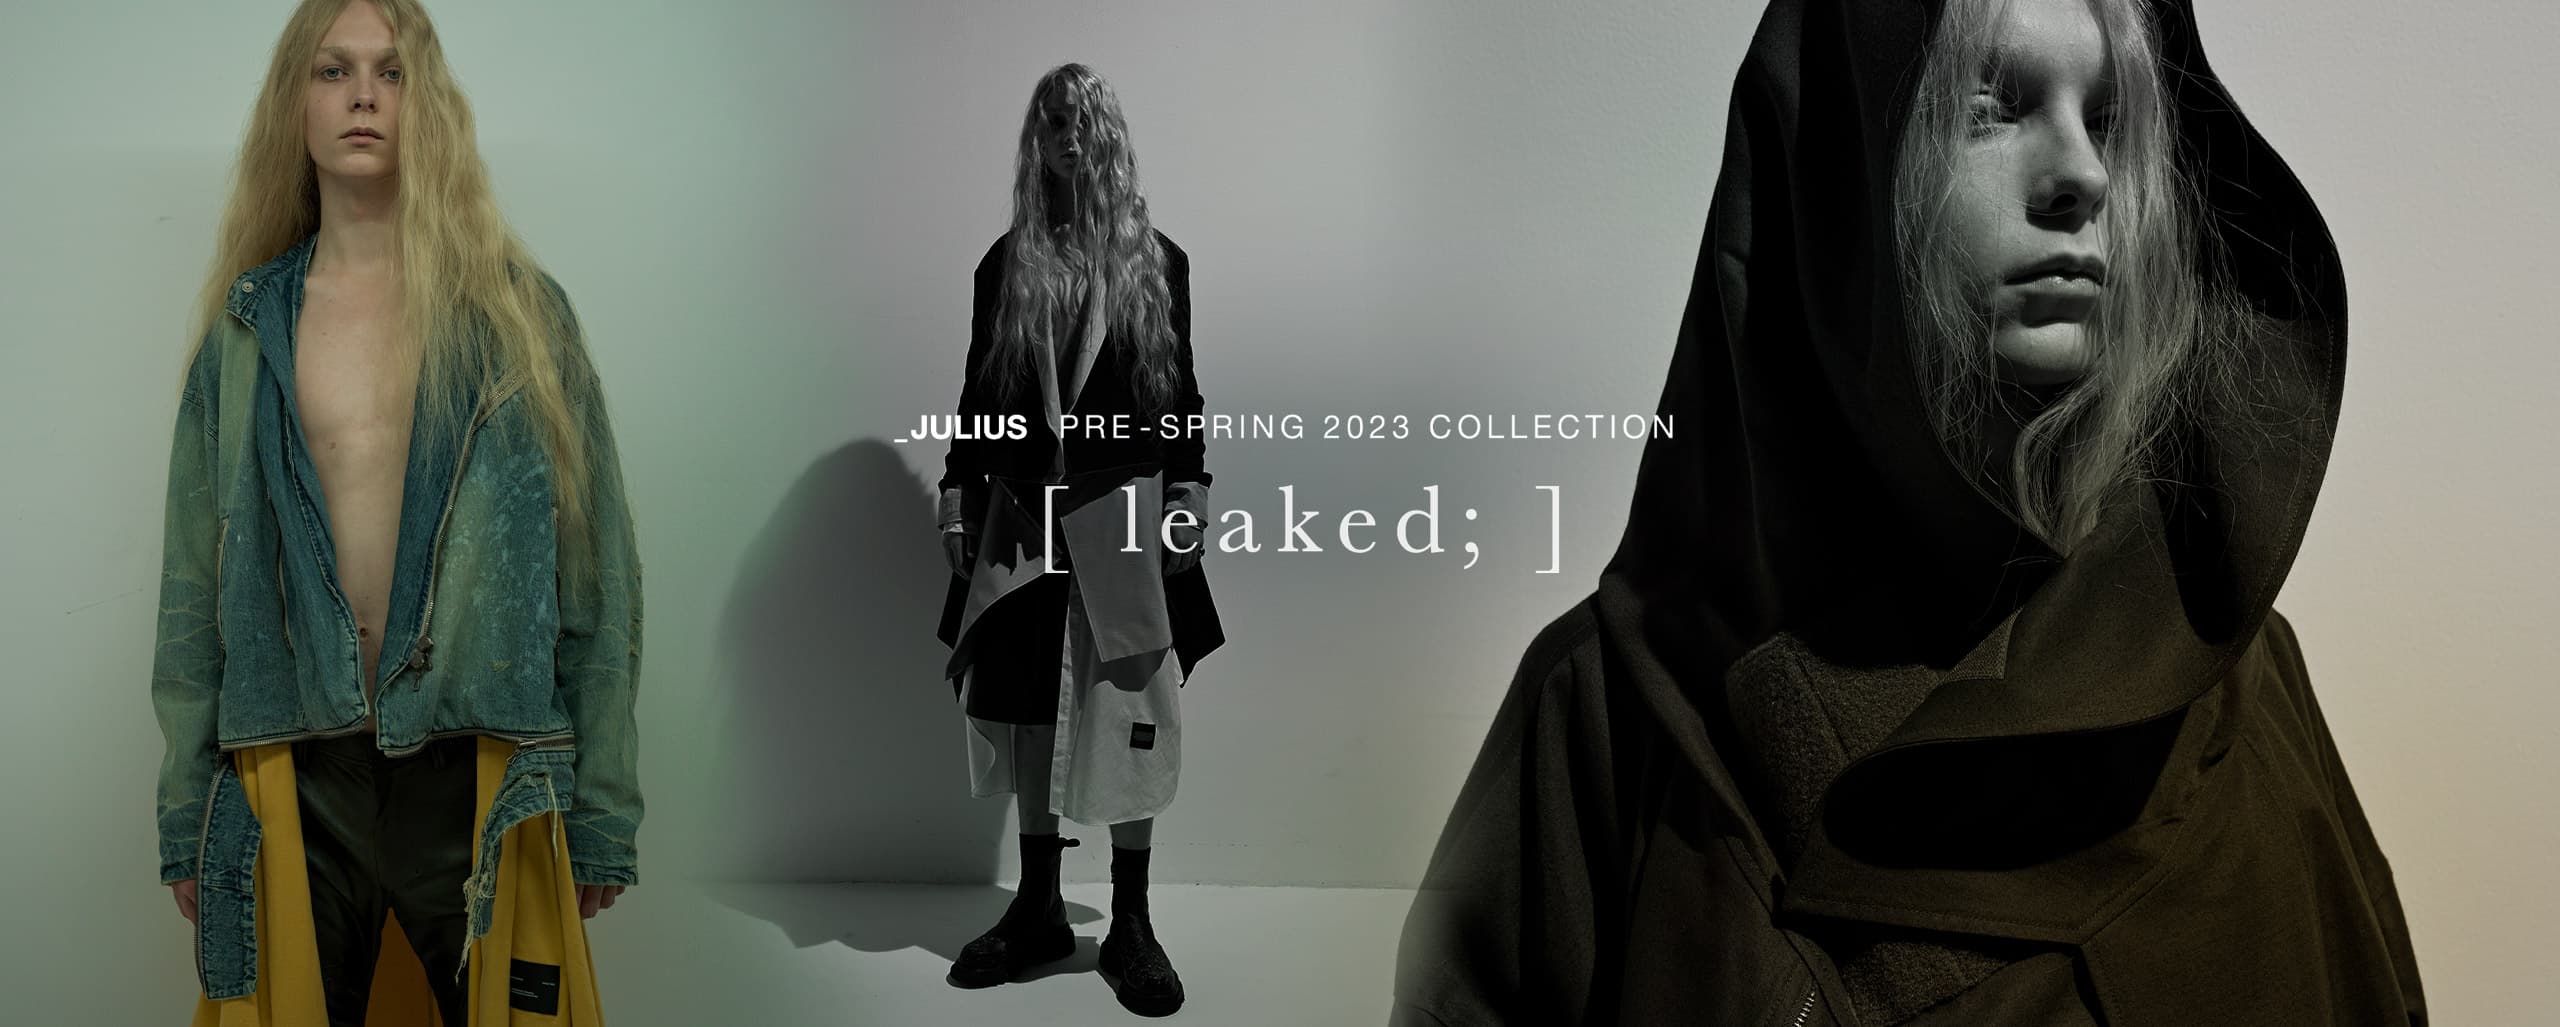 Pre-Spring 2023 Collection